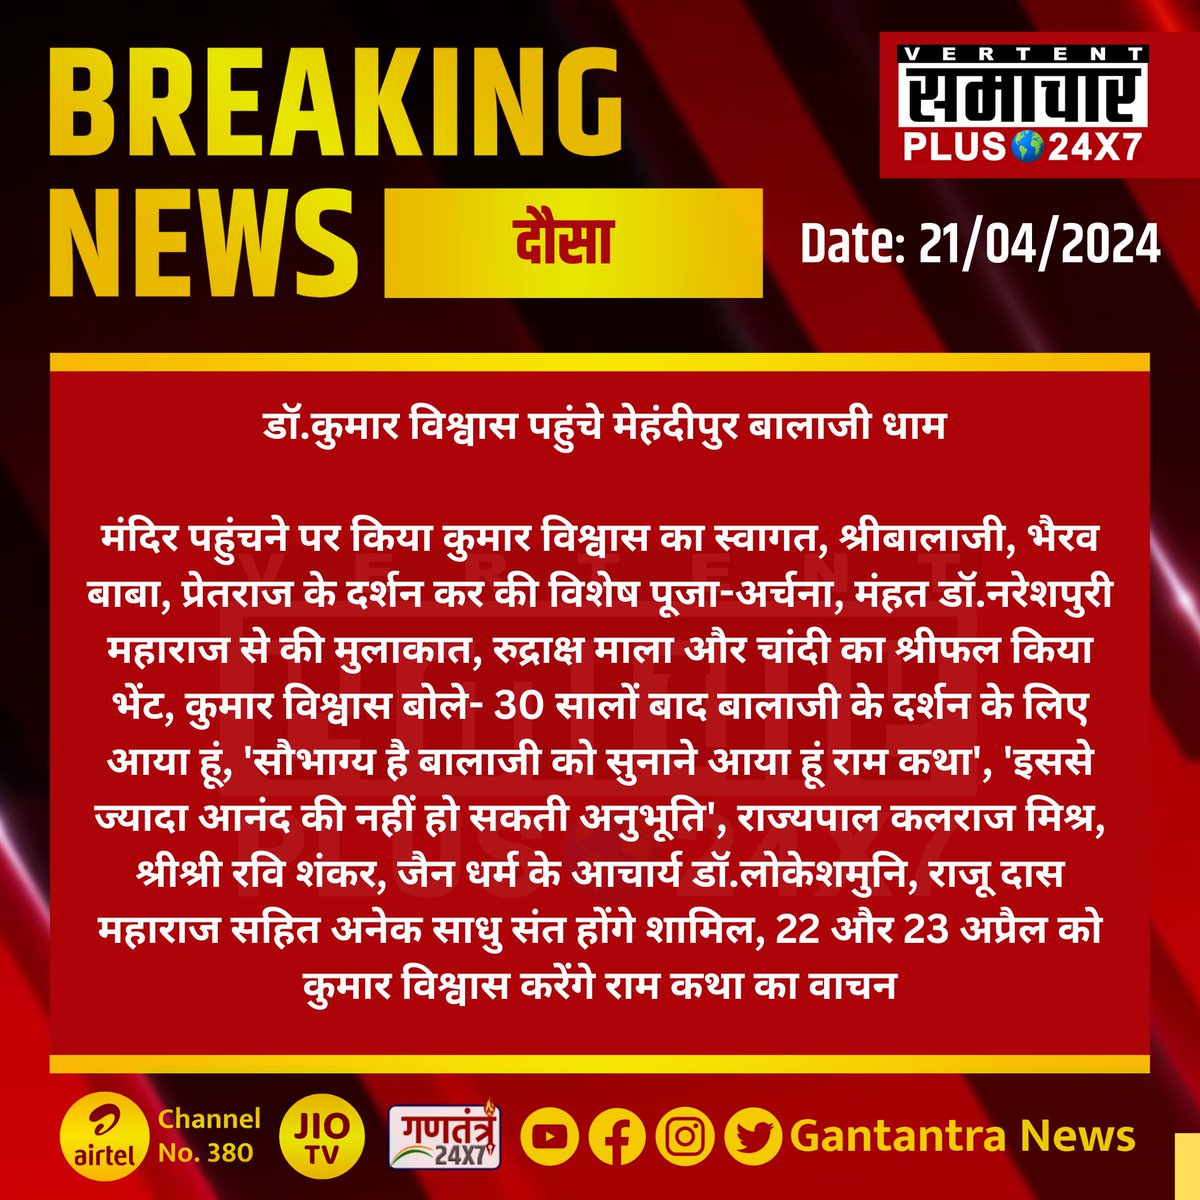 #दौसा : डॉ.कुमार विश्वास पहुंचे मेहंदीपुर बालाजी धाम

मंदिर पहुंचने पर किया कुमार विश्वास का स्वागत...

#Dausa #Rajasthan #SamacharPlus #BreakingNews #MehandipurBalaji @DrKumarVishwas @KalrajMishra